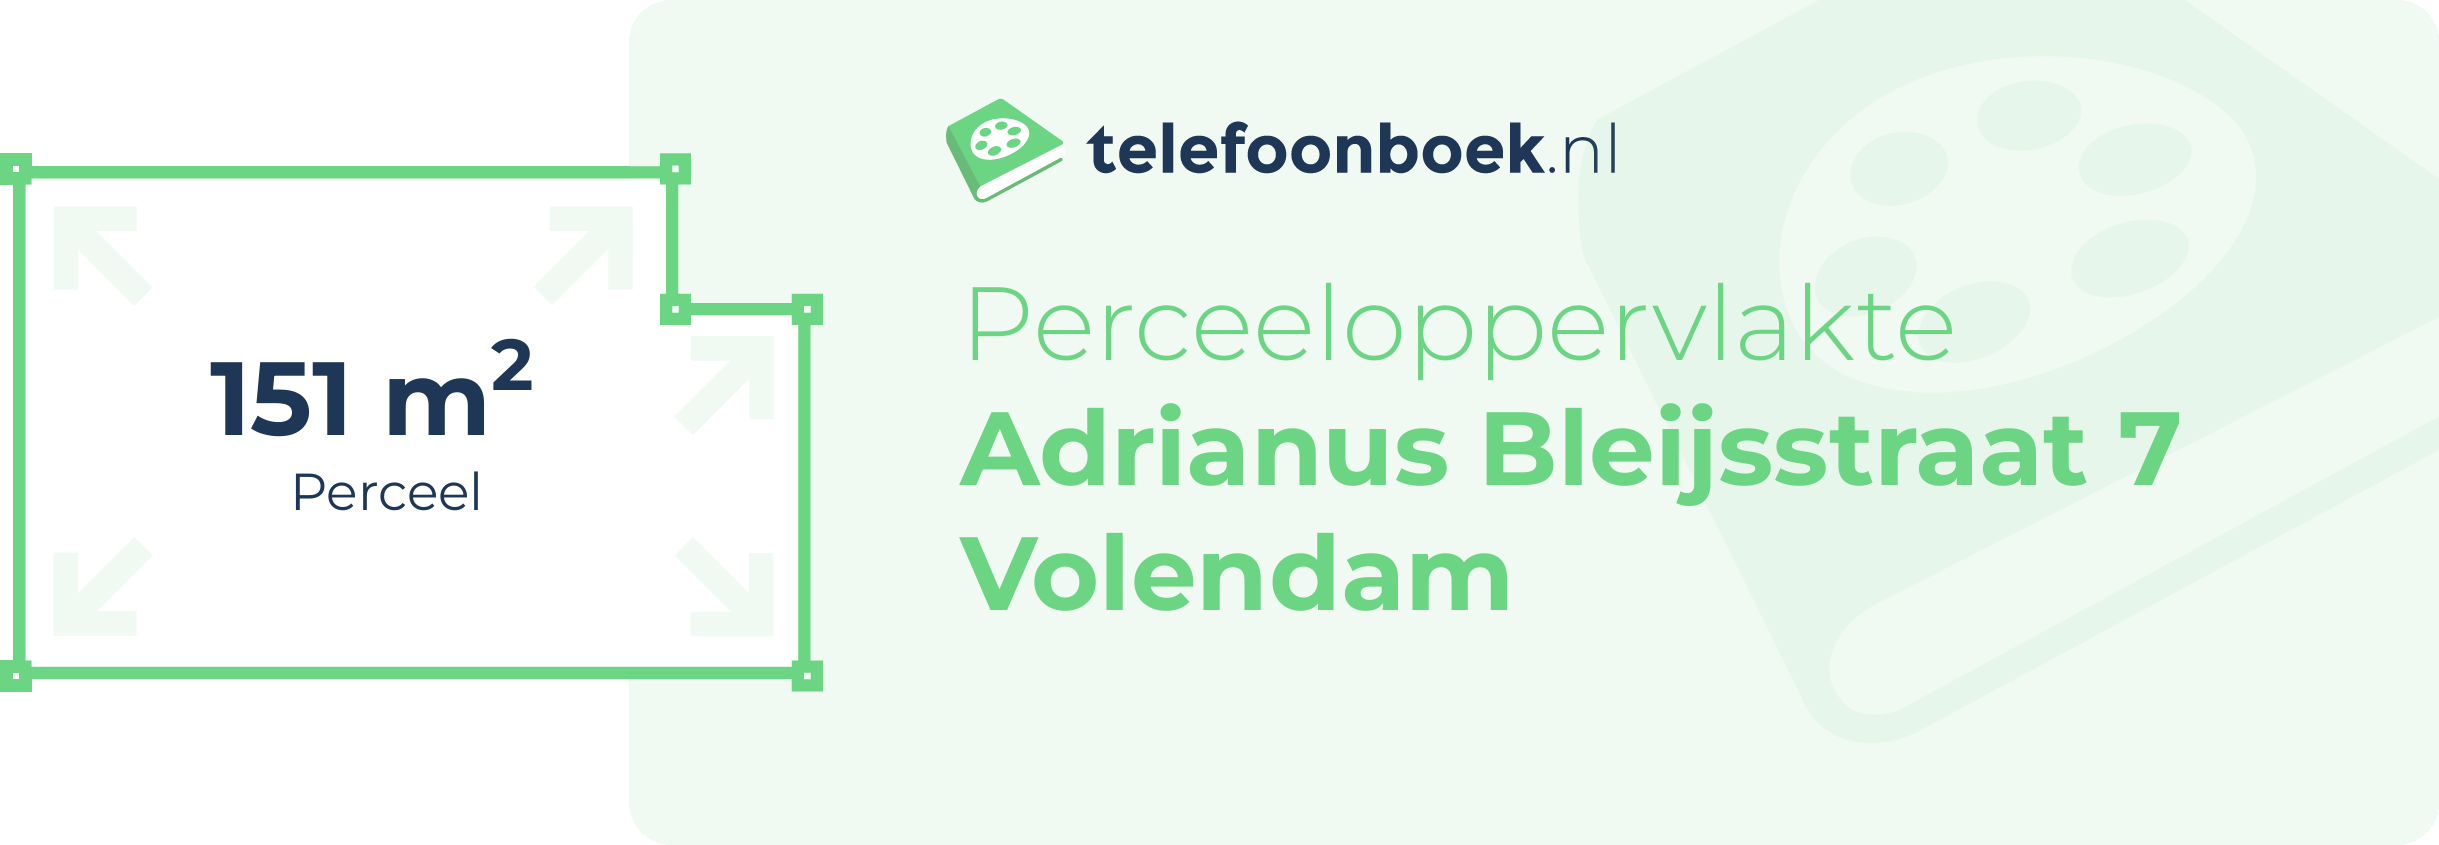 Perceeloppervlakte Adrianus Bleijsstraat 7 Volendam